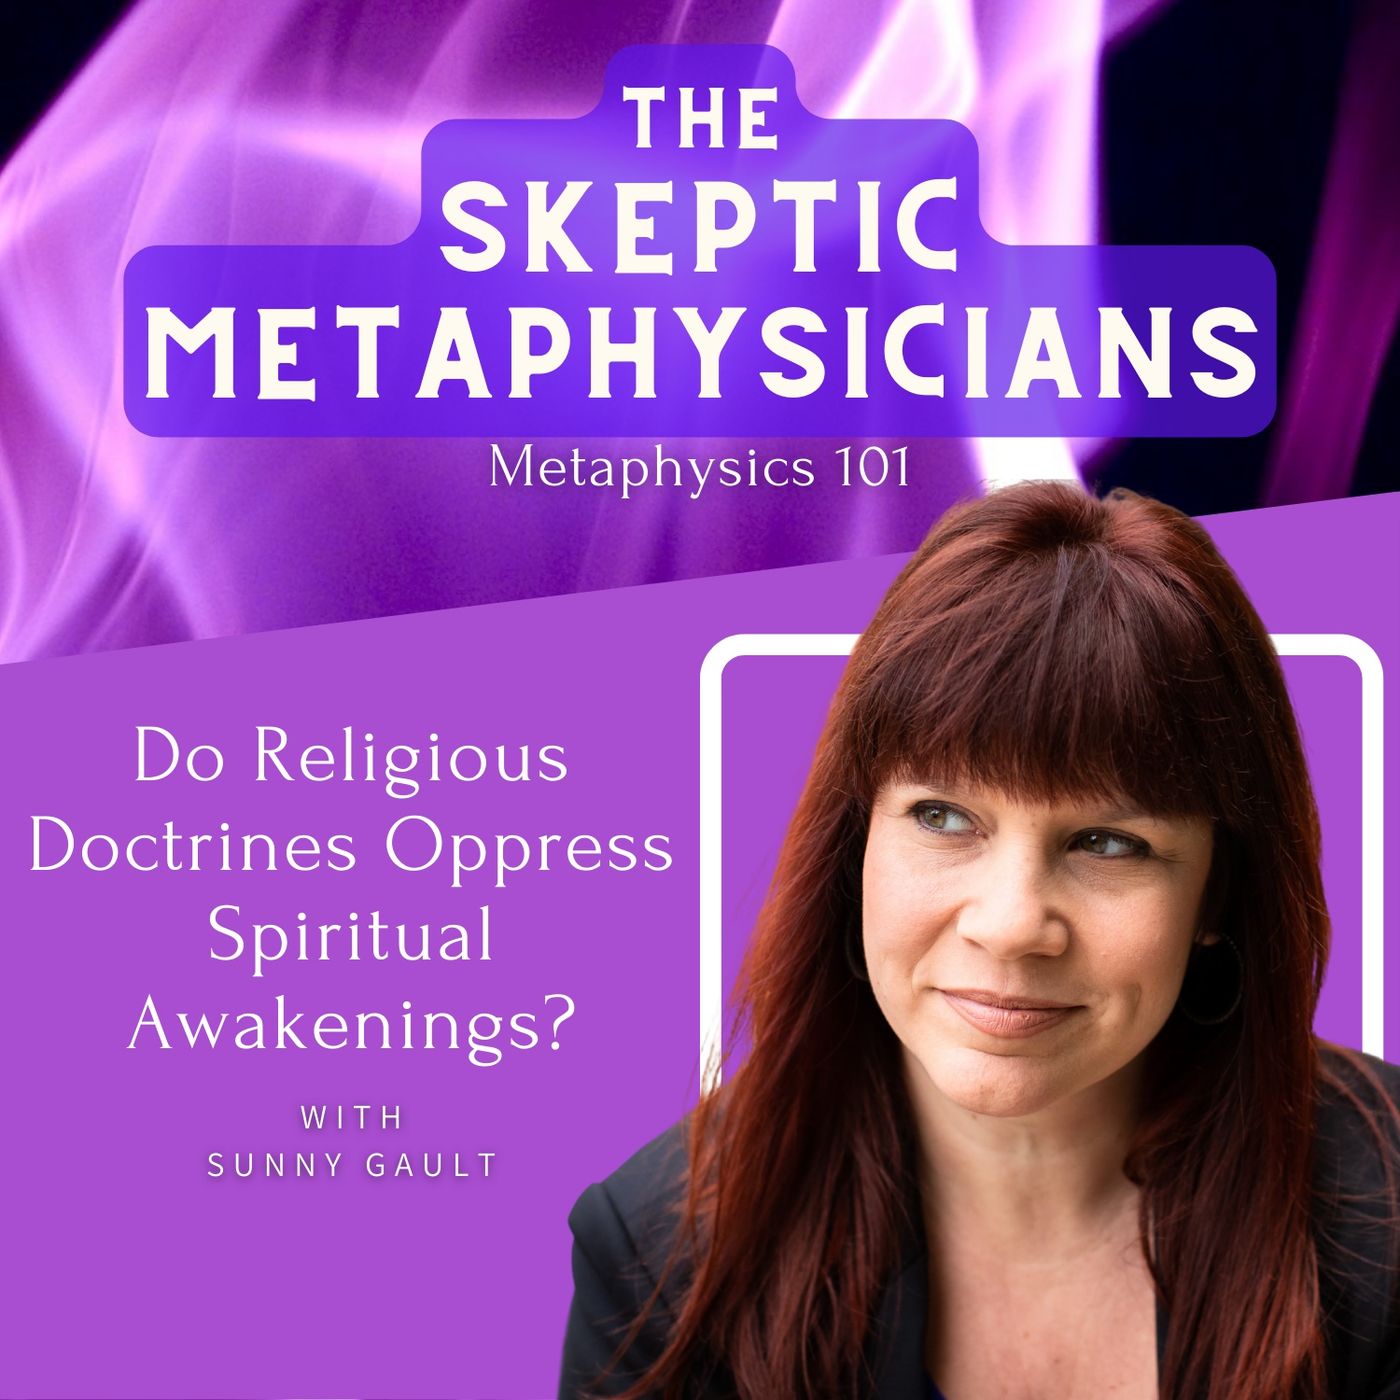 Do Religious Doctrines Help or Oppress Spiritual Awakenings? | Sunny Gault Image